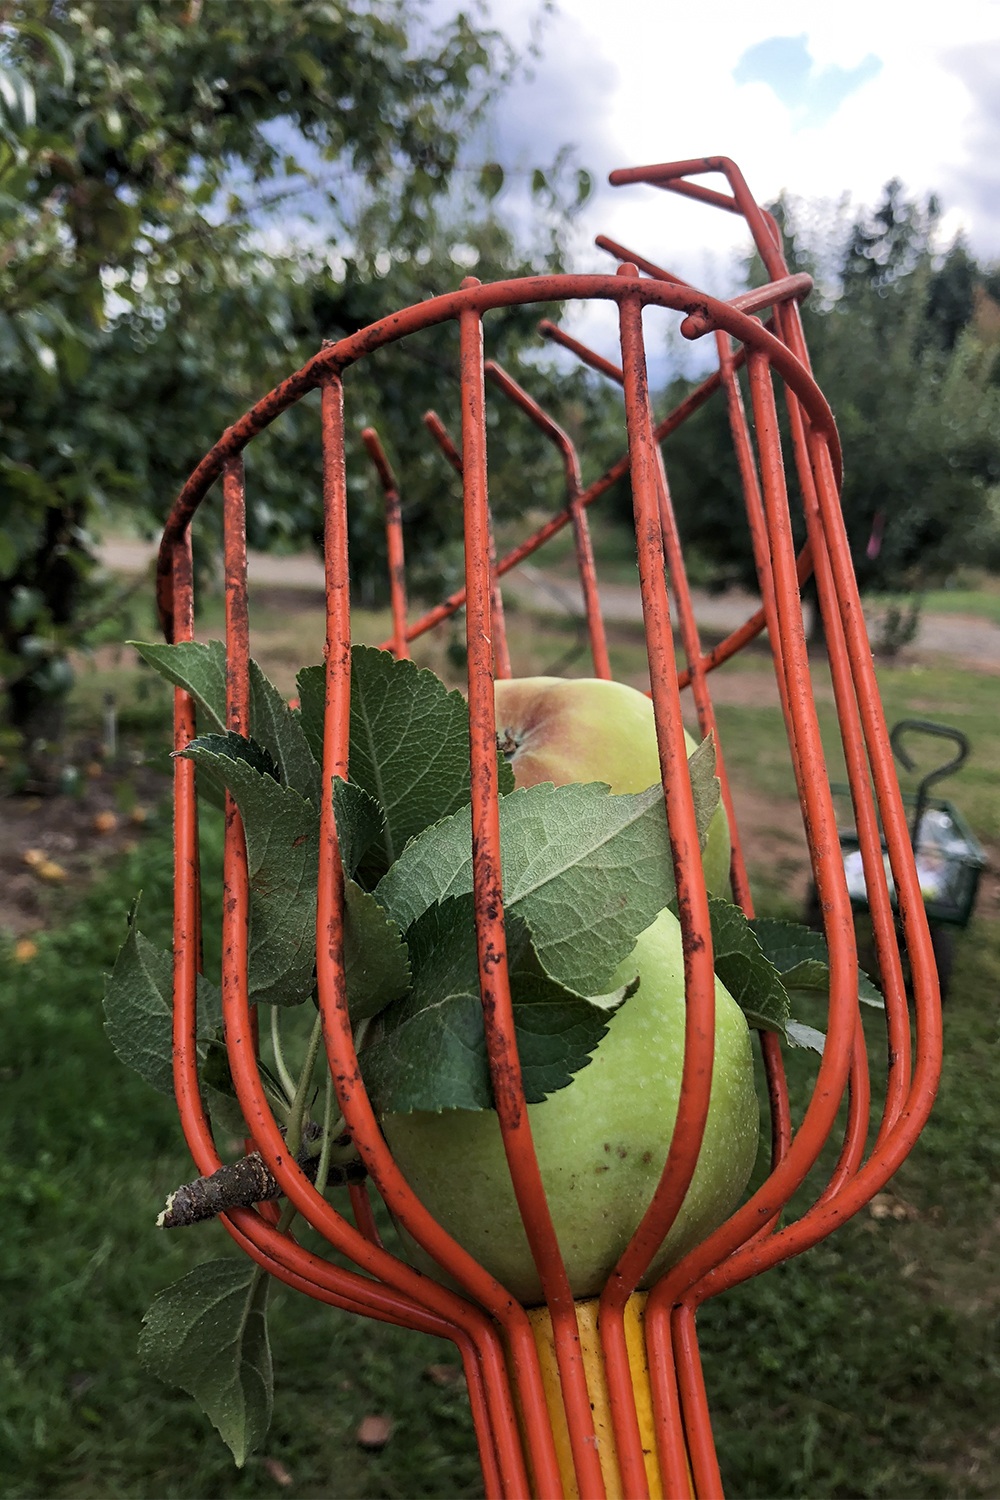 apple picker tool full of apples